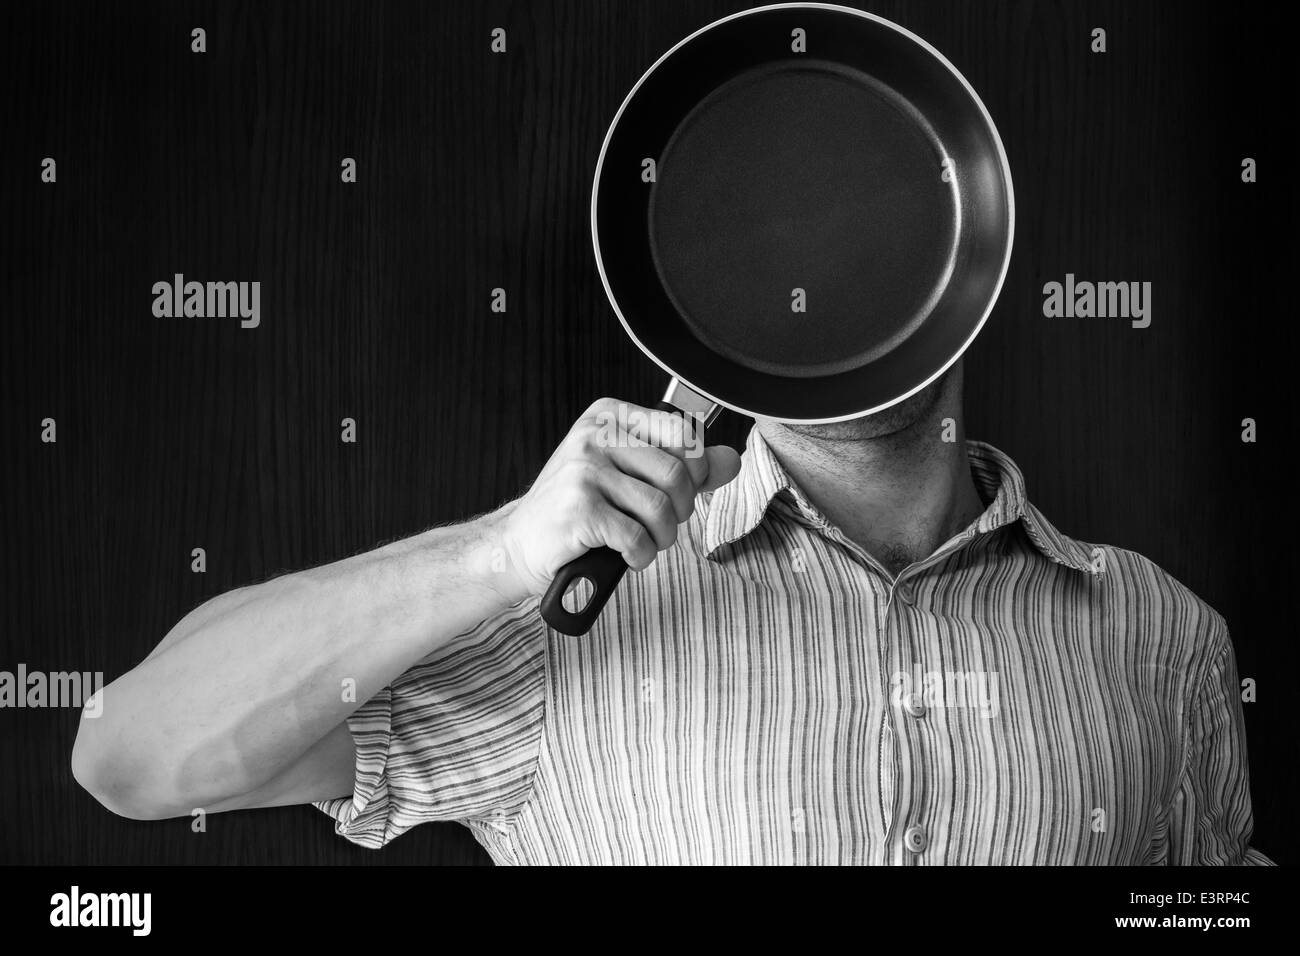 Jeune homme portrait monochrome derrière poêle noir Banque D'Images